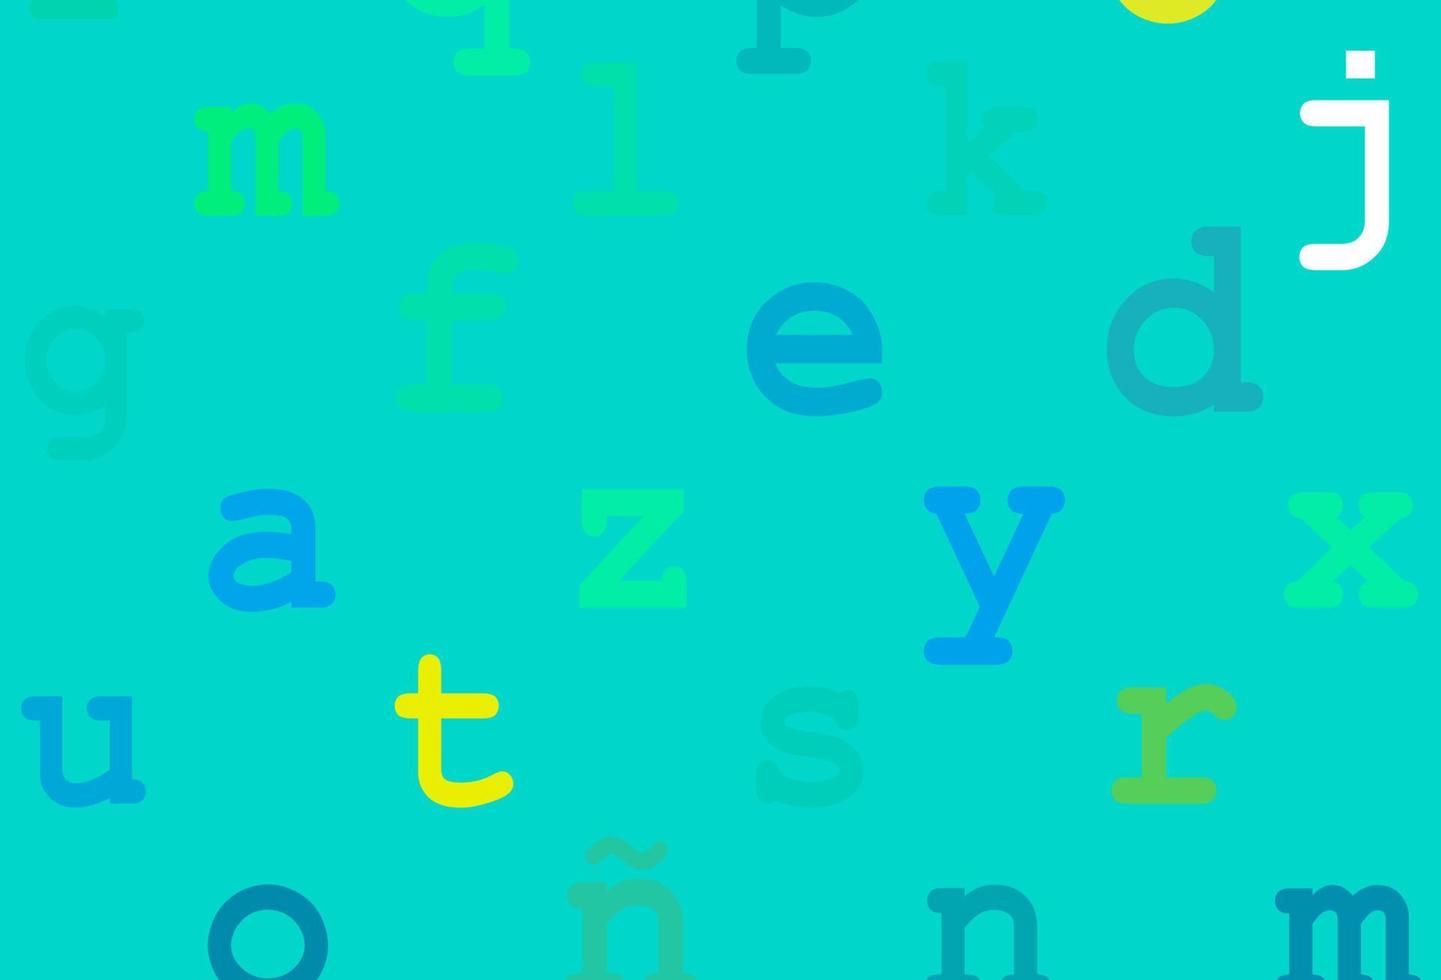 mise en page vectorielle bleu clair, jaune avec alphabet latin. vecteur